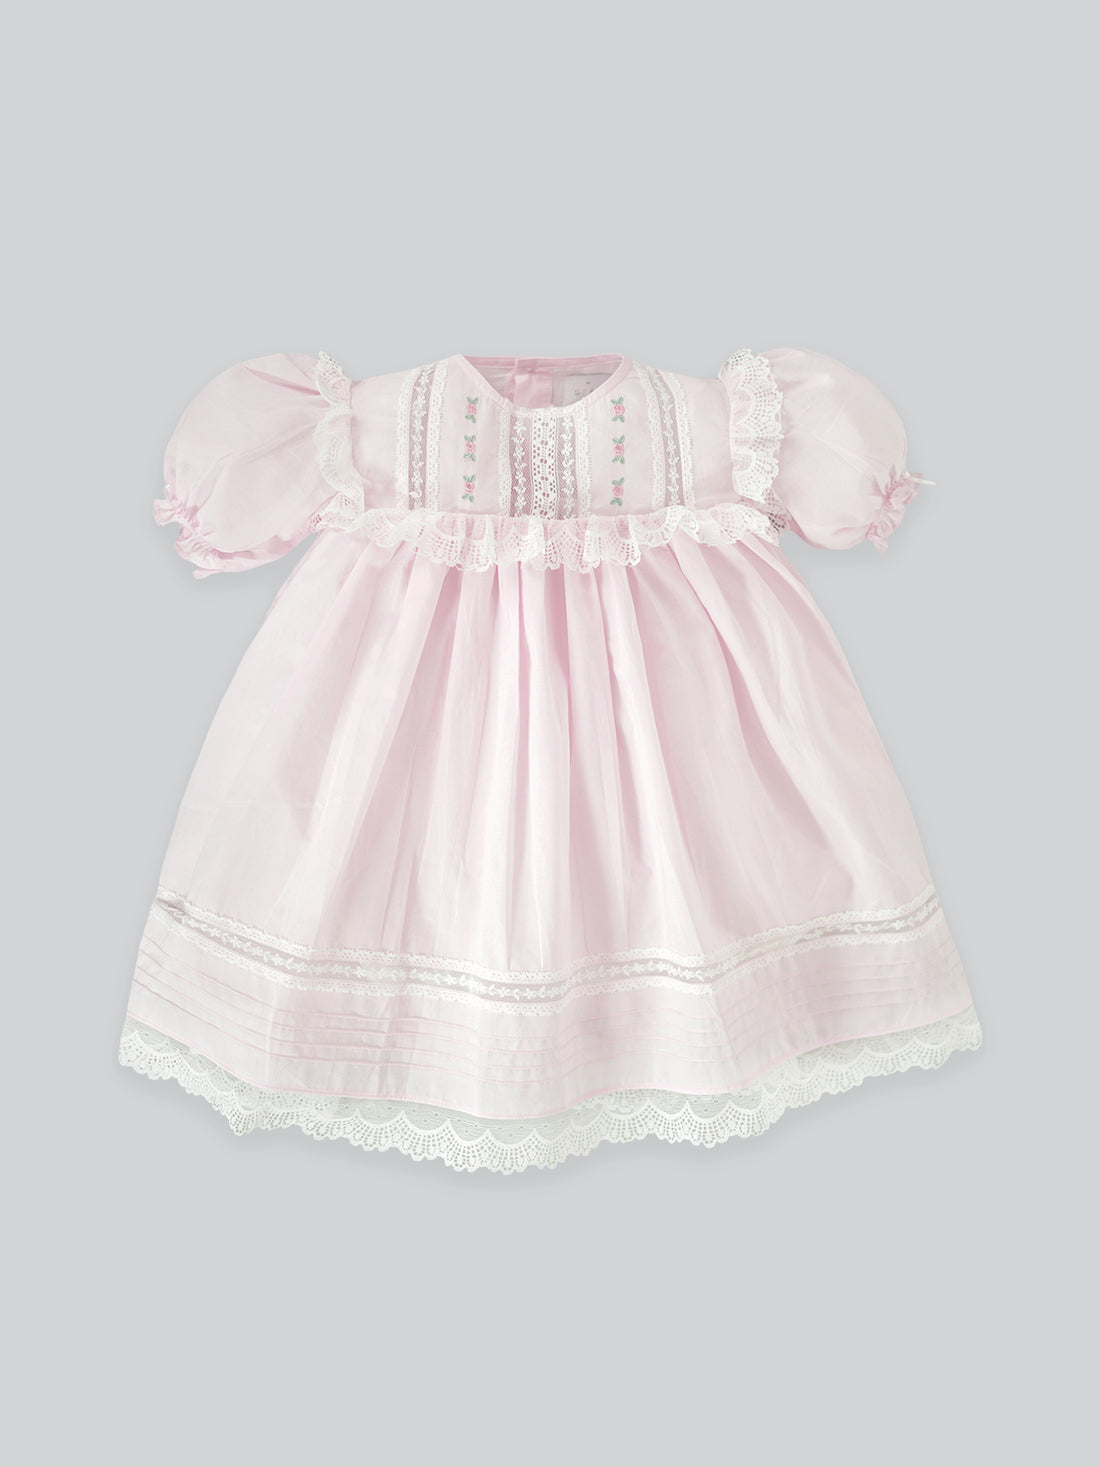 Korra Dress in Baby Pink